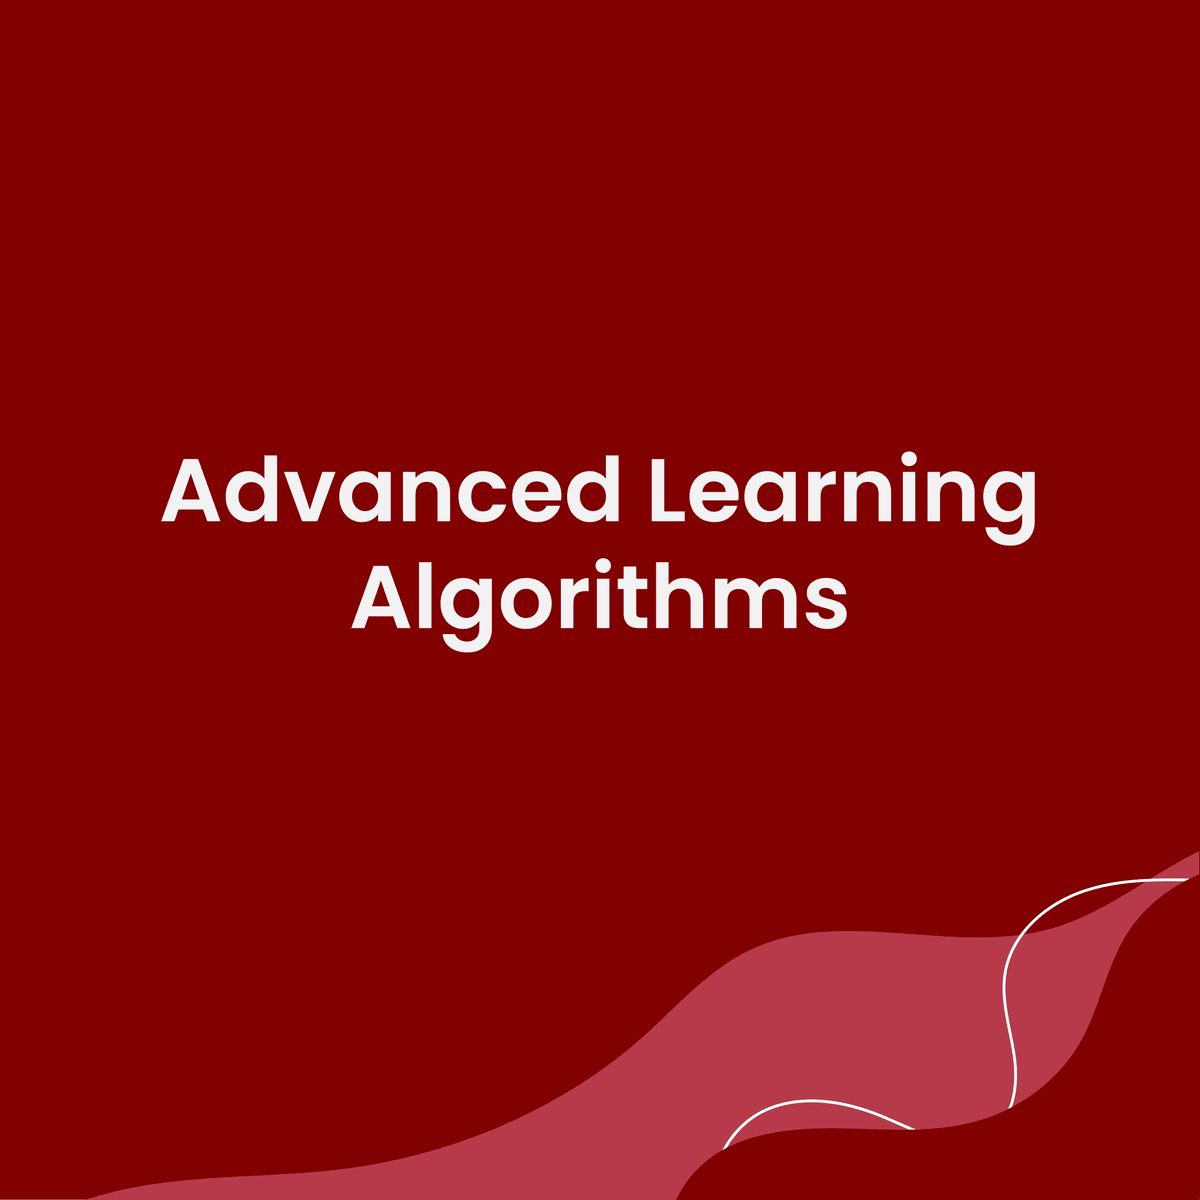 الگوریتم های یادگیری پیشرفته